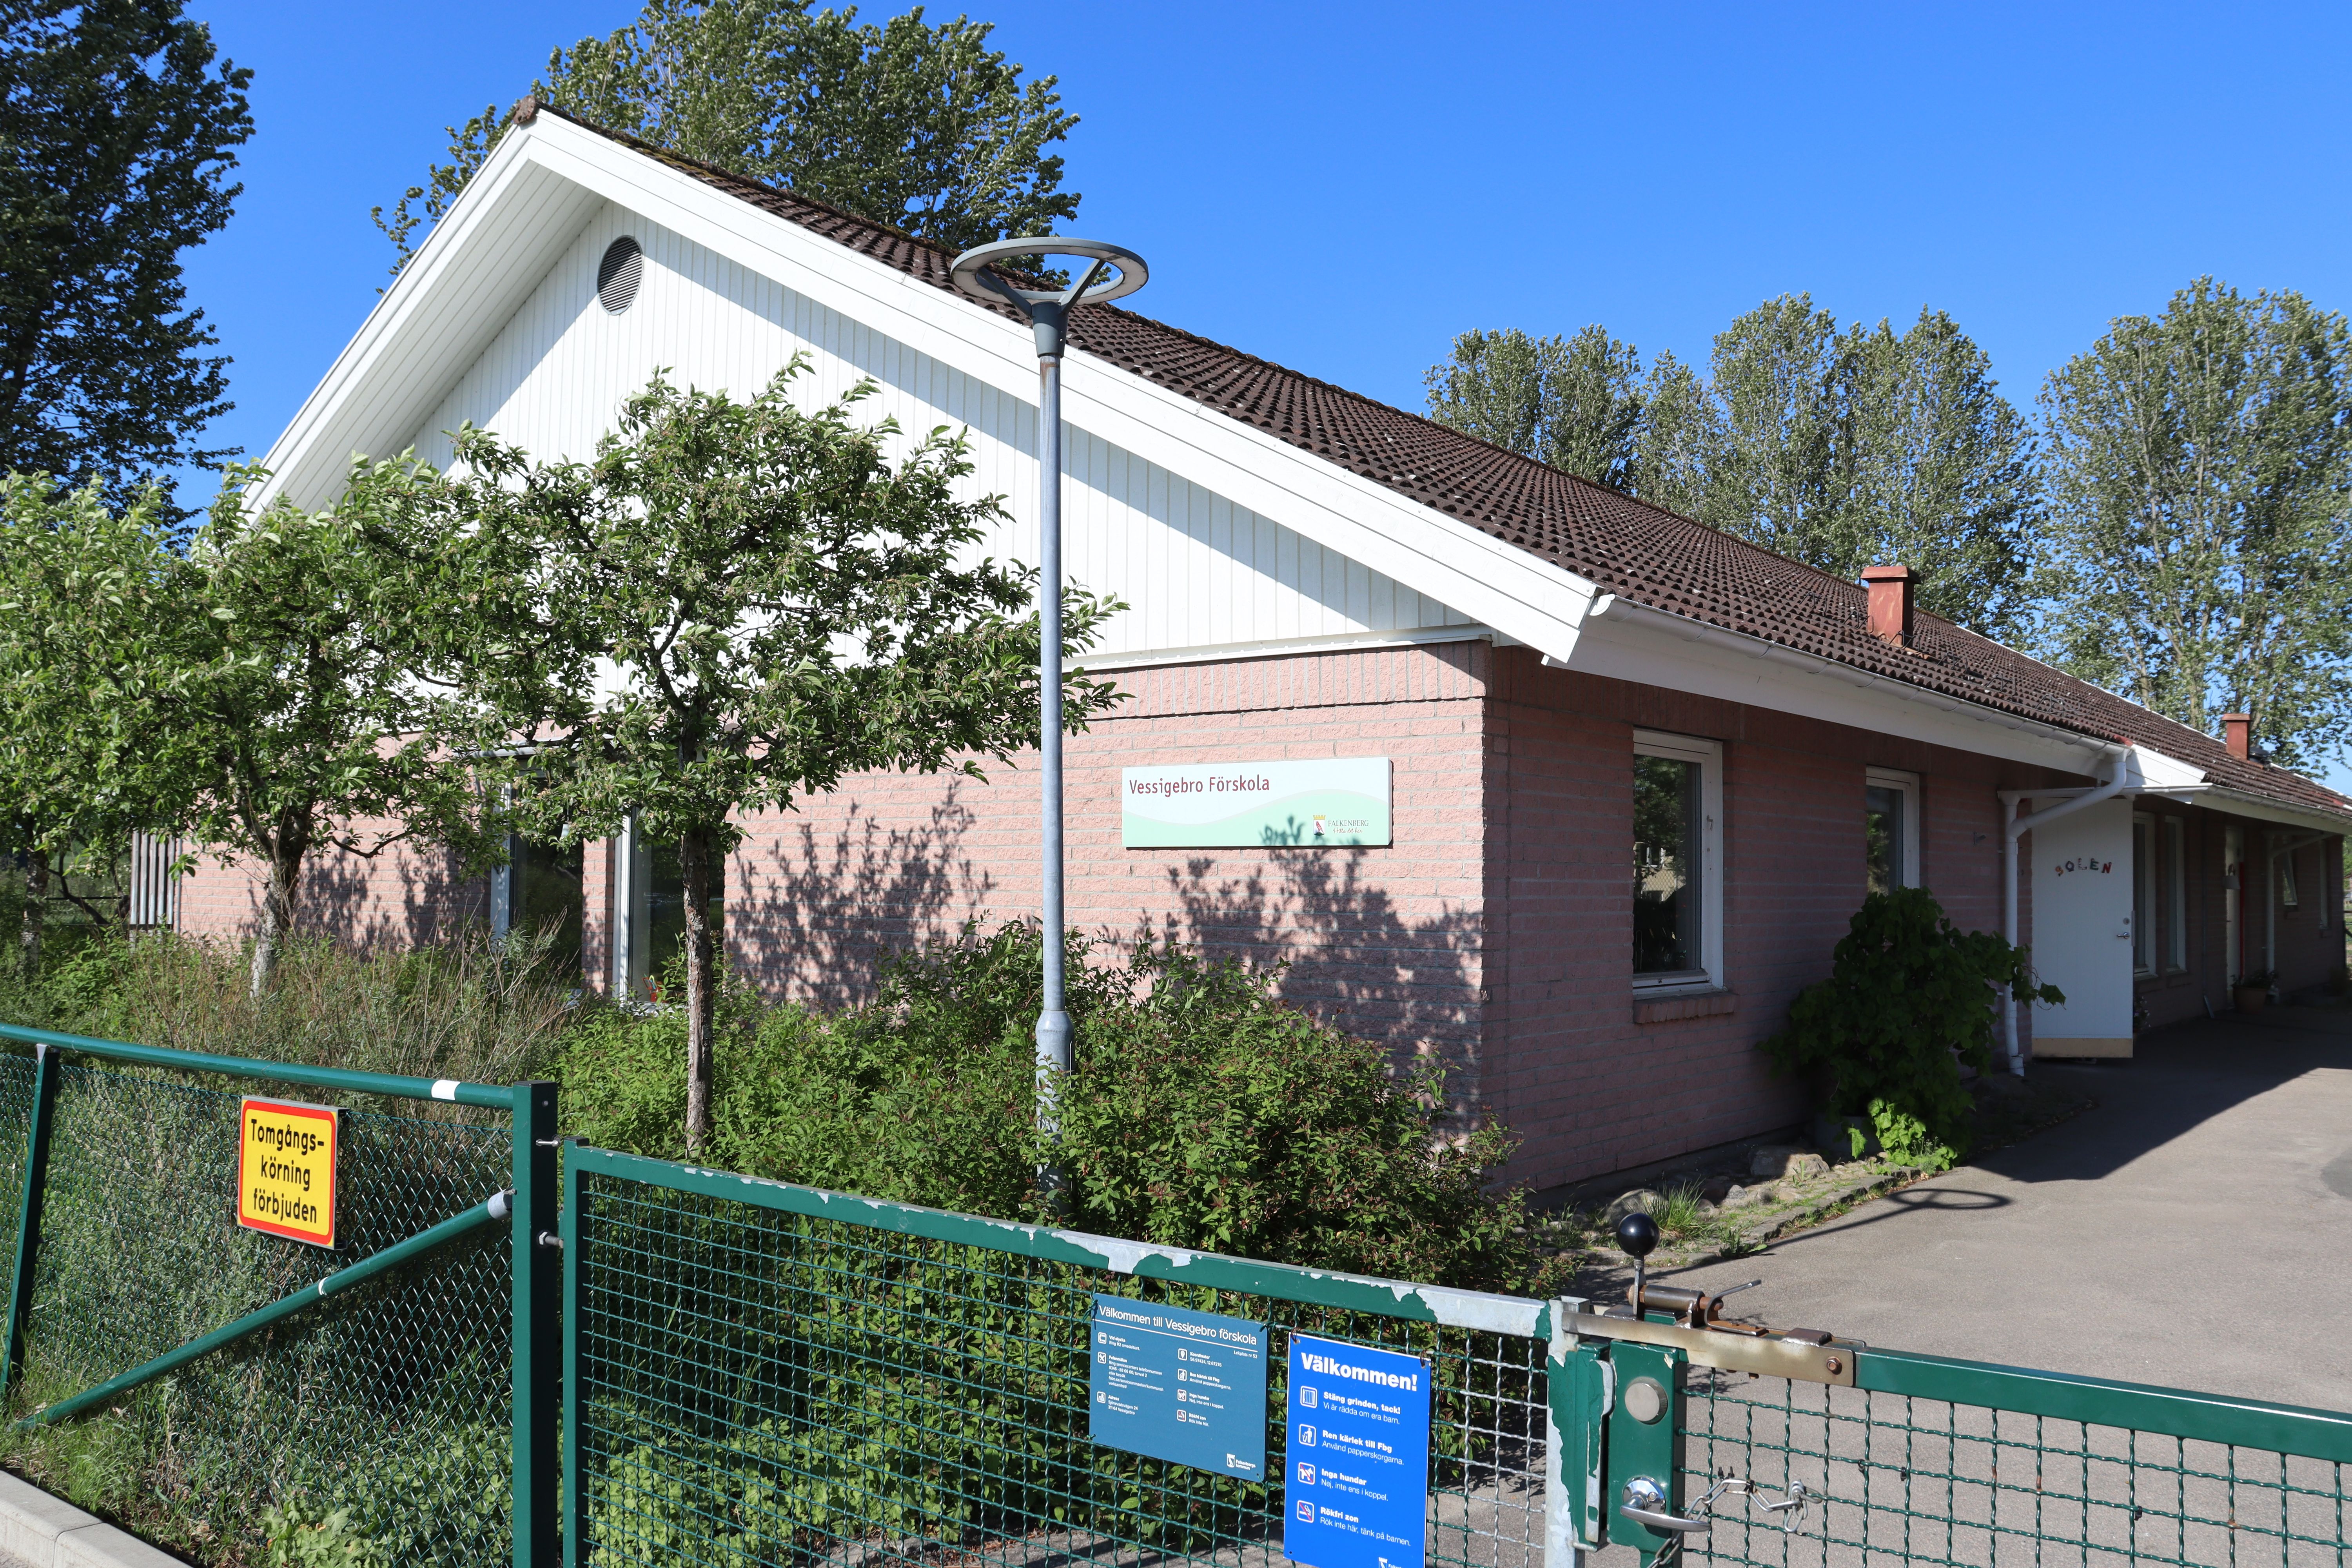 Låg ljusröd och vit byggnad sedd från gaveln, skylt med "Vessigebro förskola" på fasaden